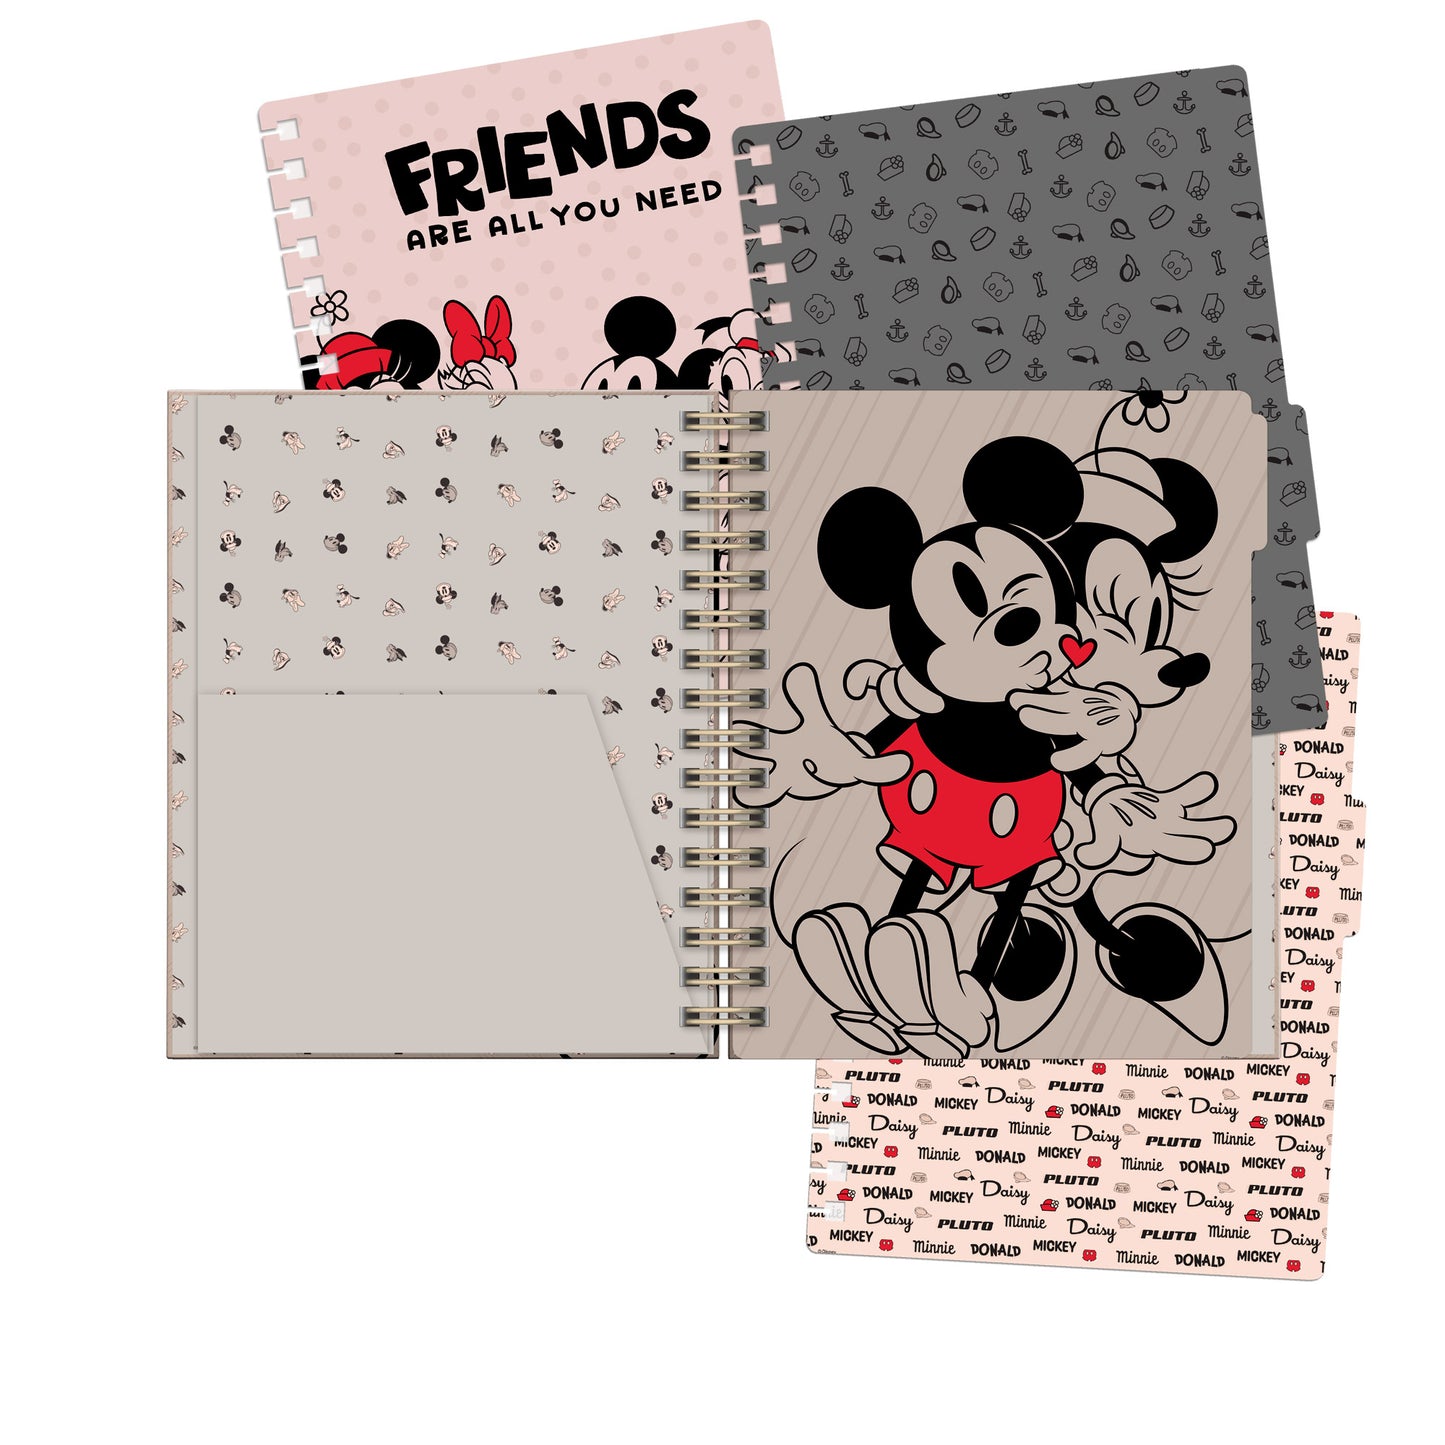 Cuaderno A5 Disney Mickey & Minnie